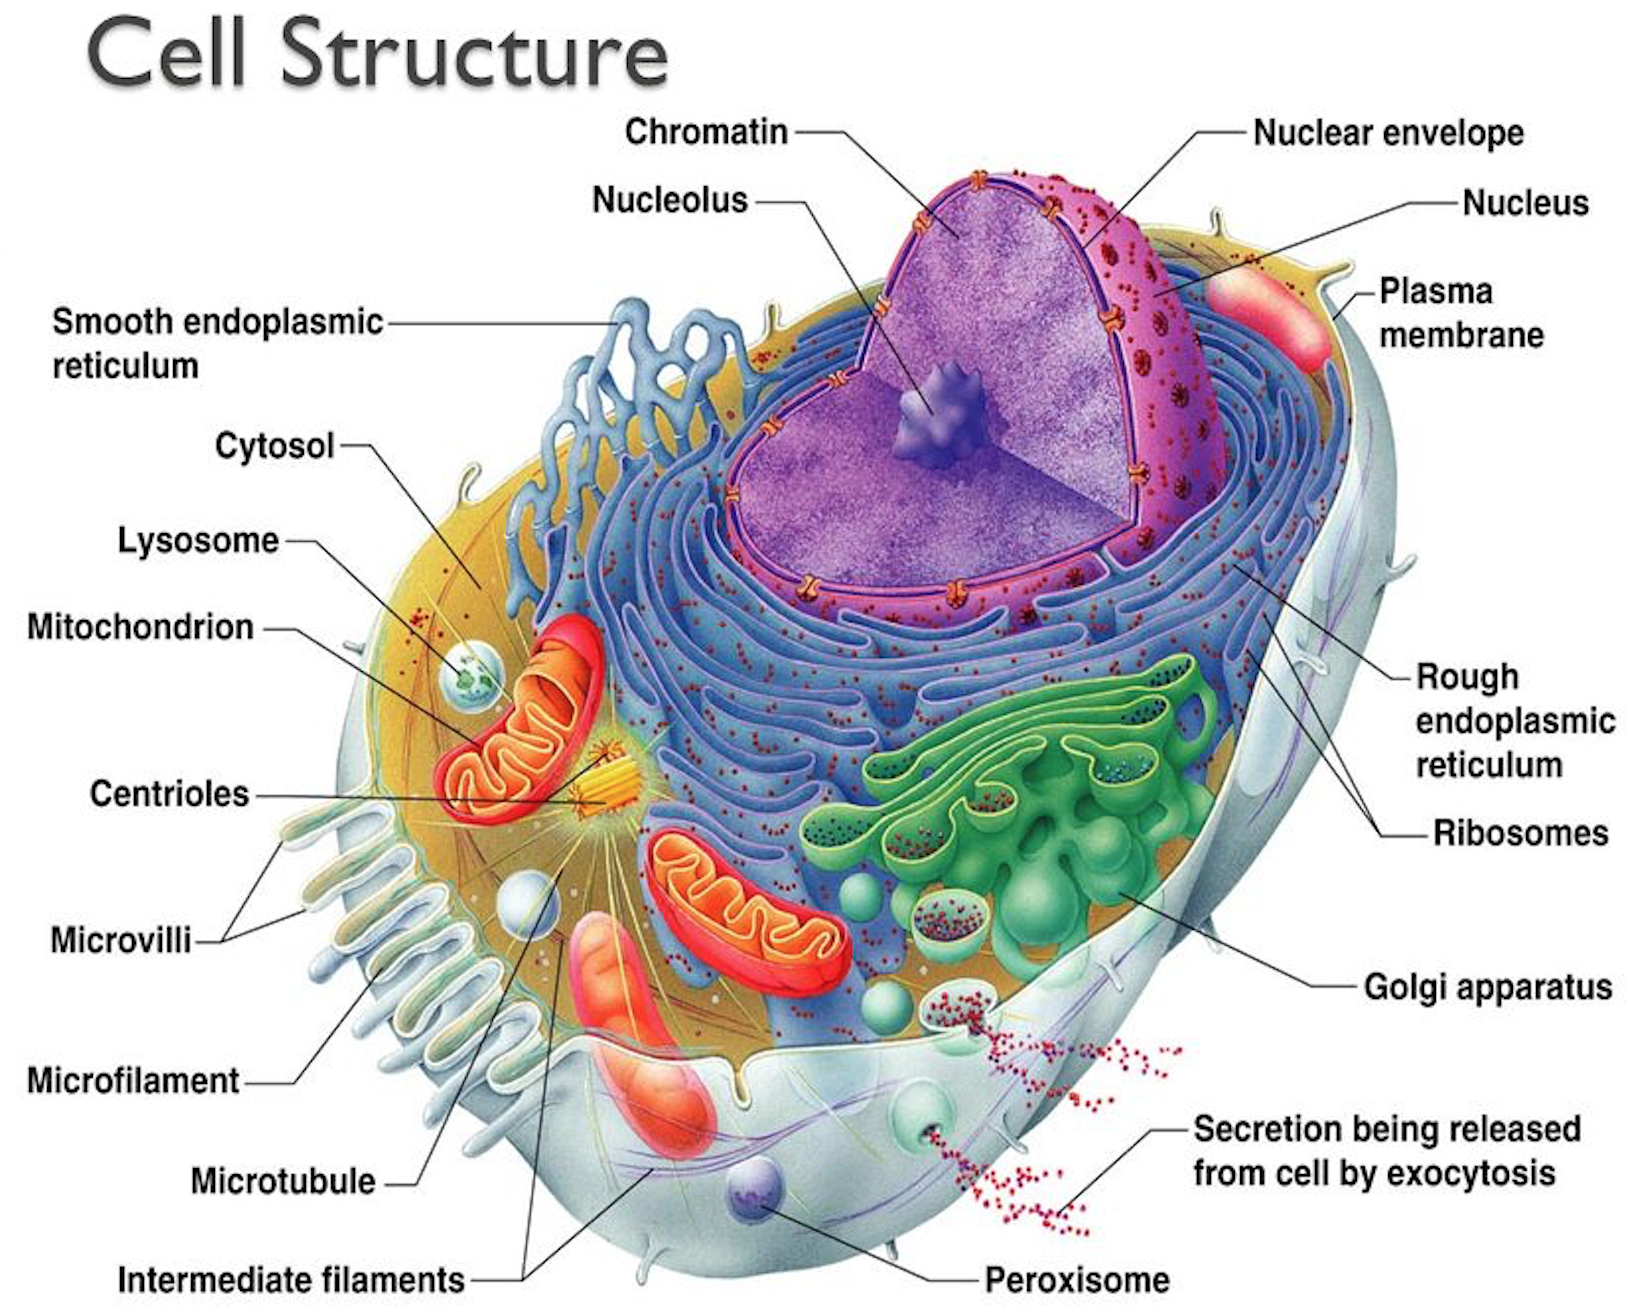 Органоид называемый энергетической станцией клетки